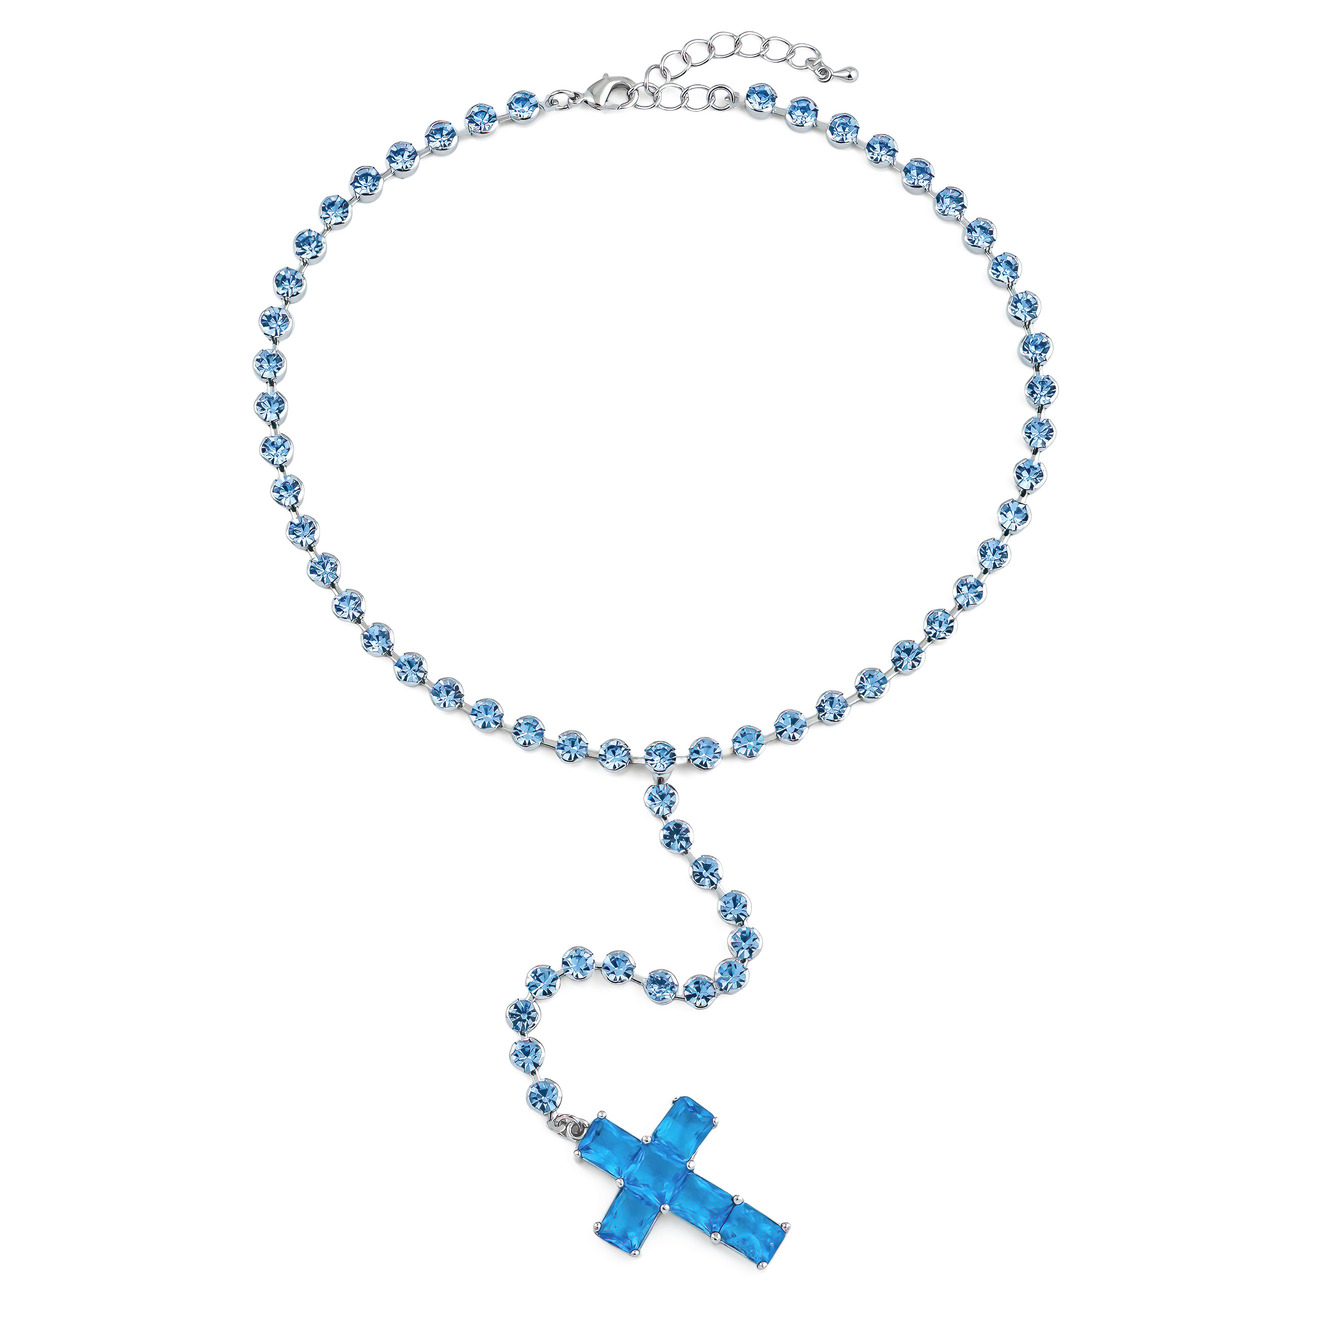 Herald Percy Серебристое колье-галстук с голубыми кристаллами в виде креста herald percy серебристое кольцо из сердец с белыми и розовыми кристаллами